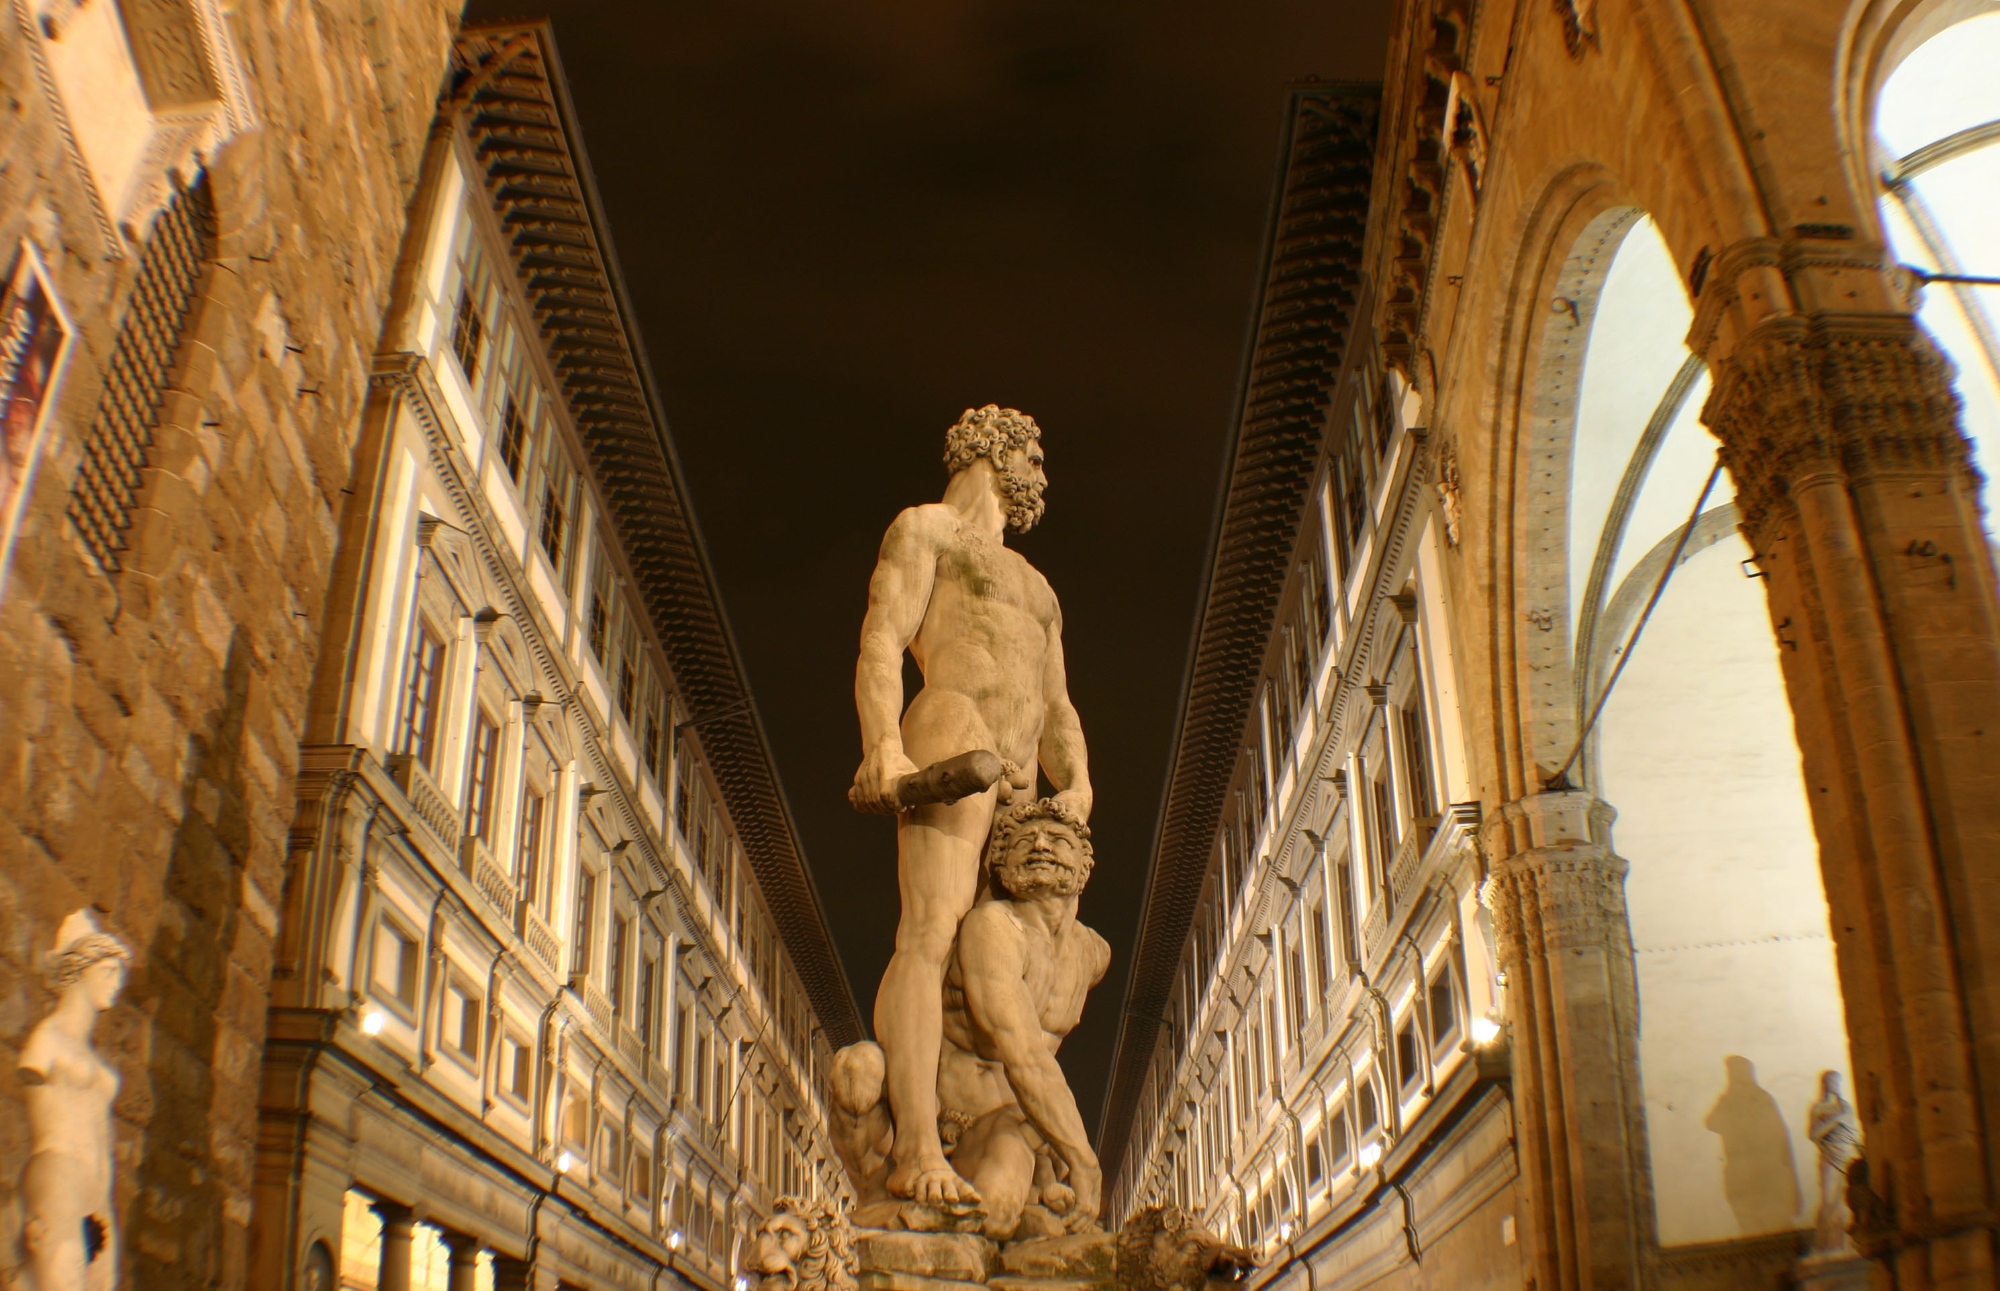 Ercole & Caco sculpture and Uffizi